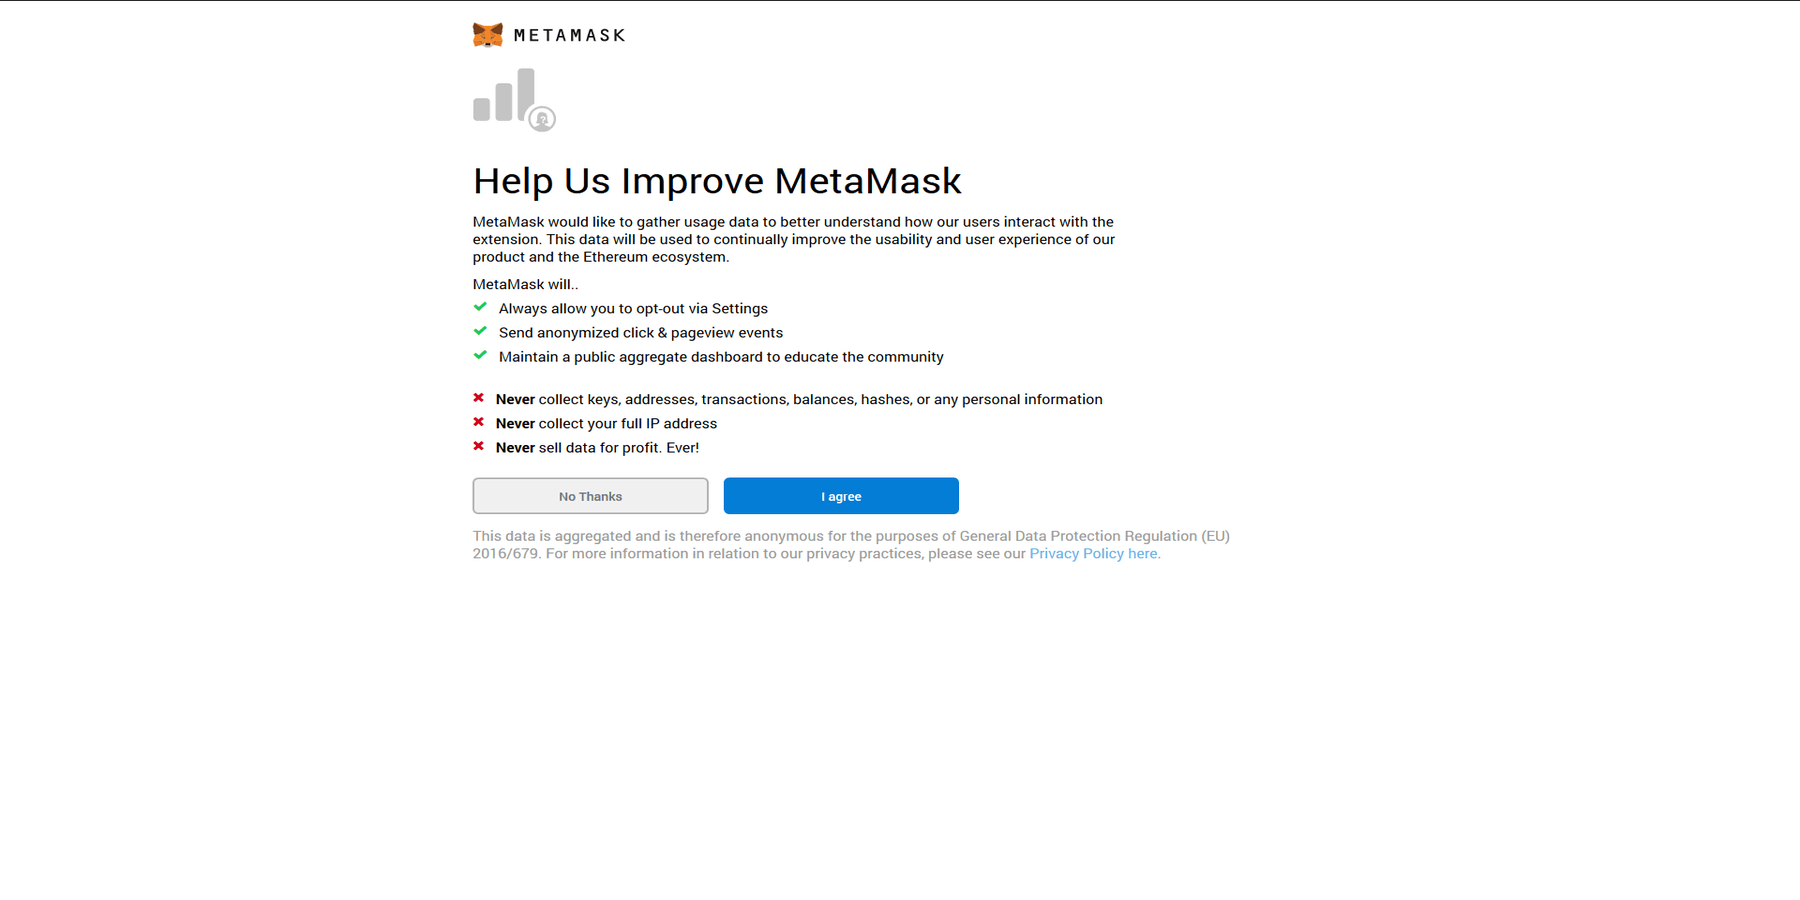 Participer à améliorer MetaMask ou non